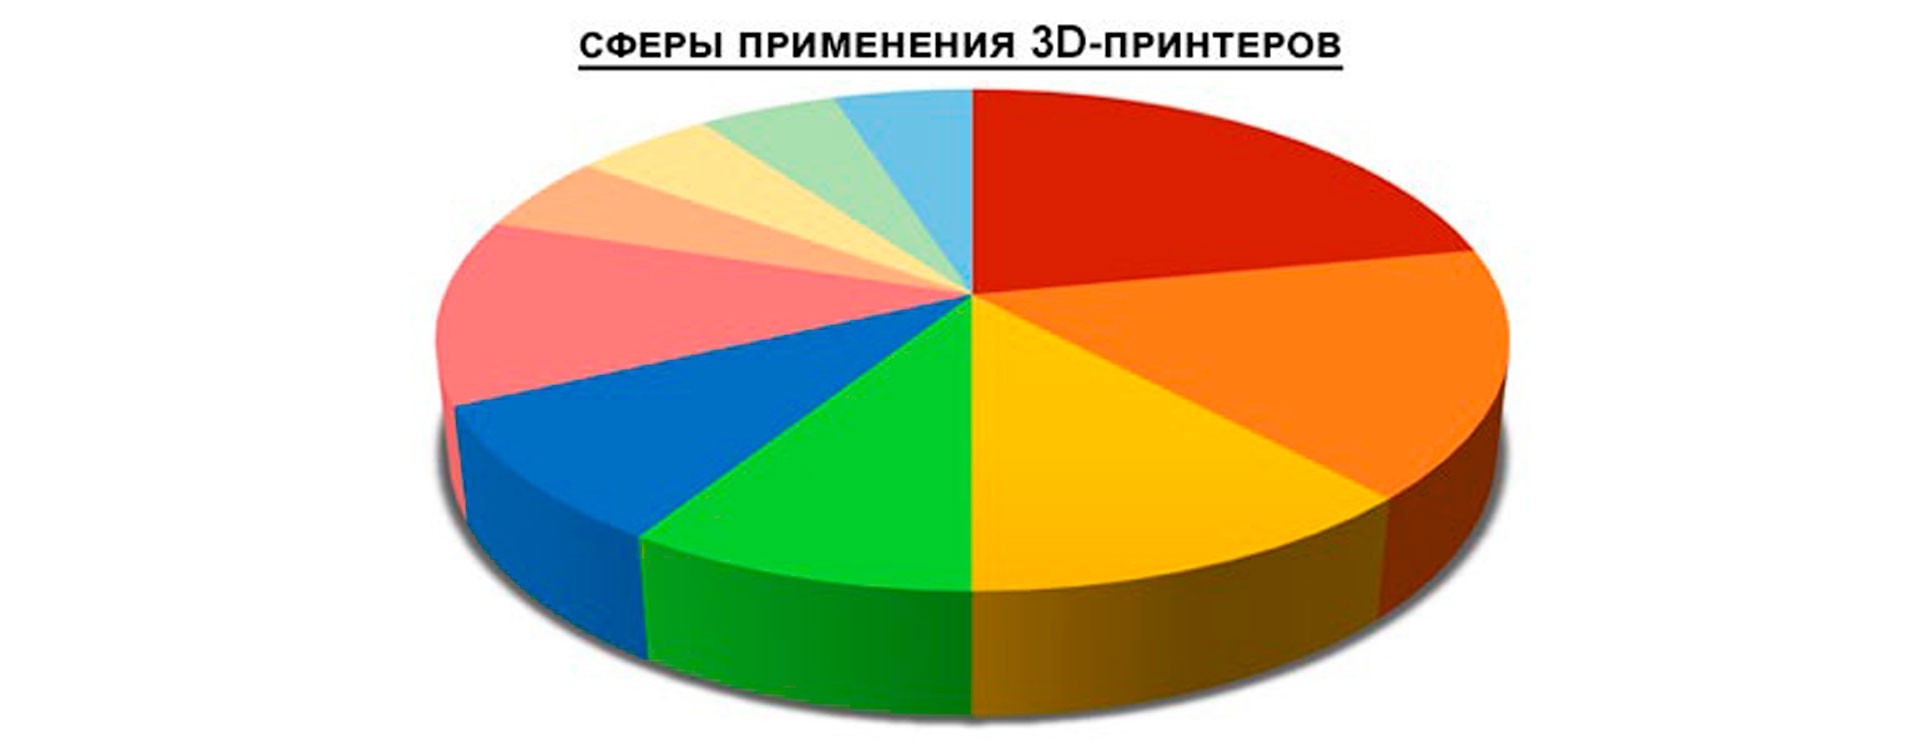 Сферы применения 3D-принтеров